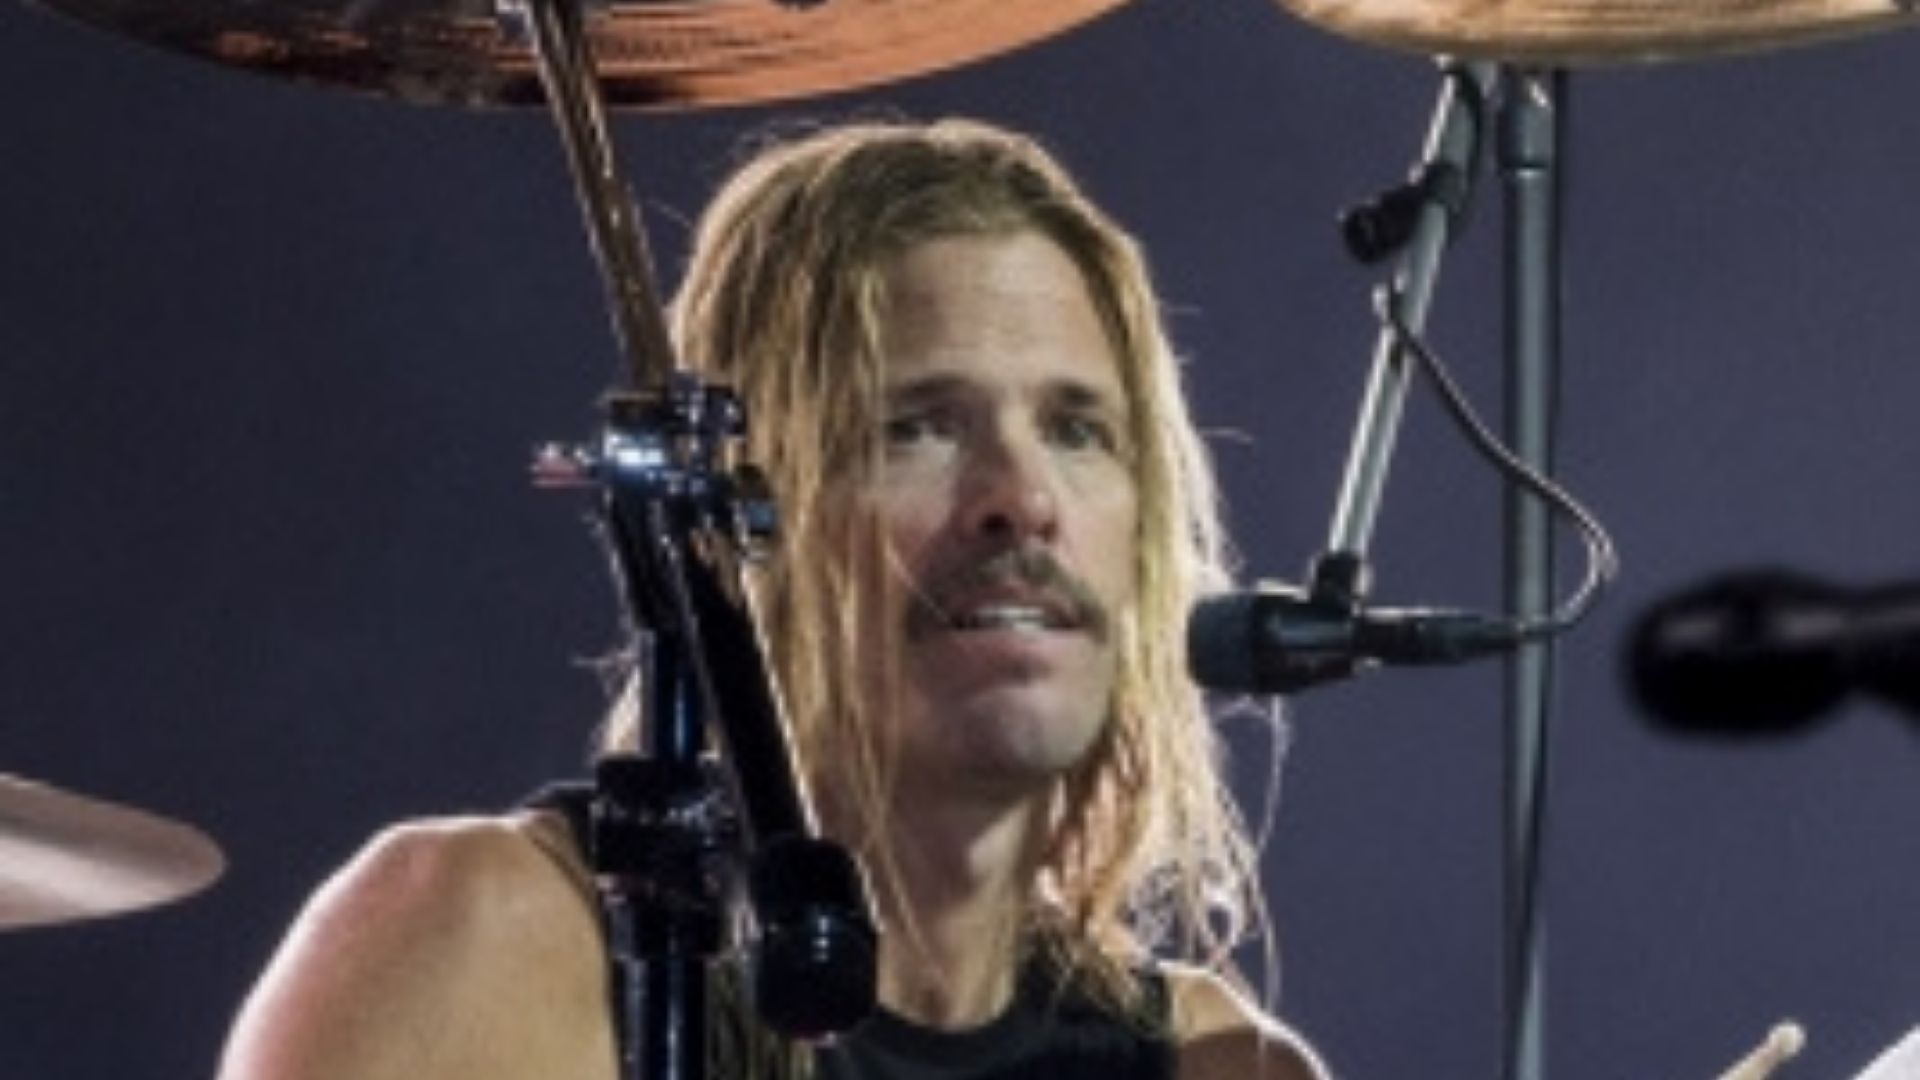 Foo Fighters drummer Taylor Hawkins dies at 50 - Los Angeles Times